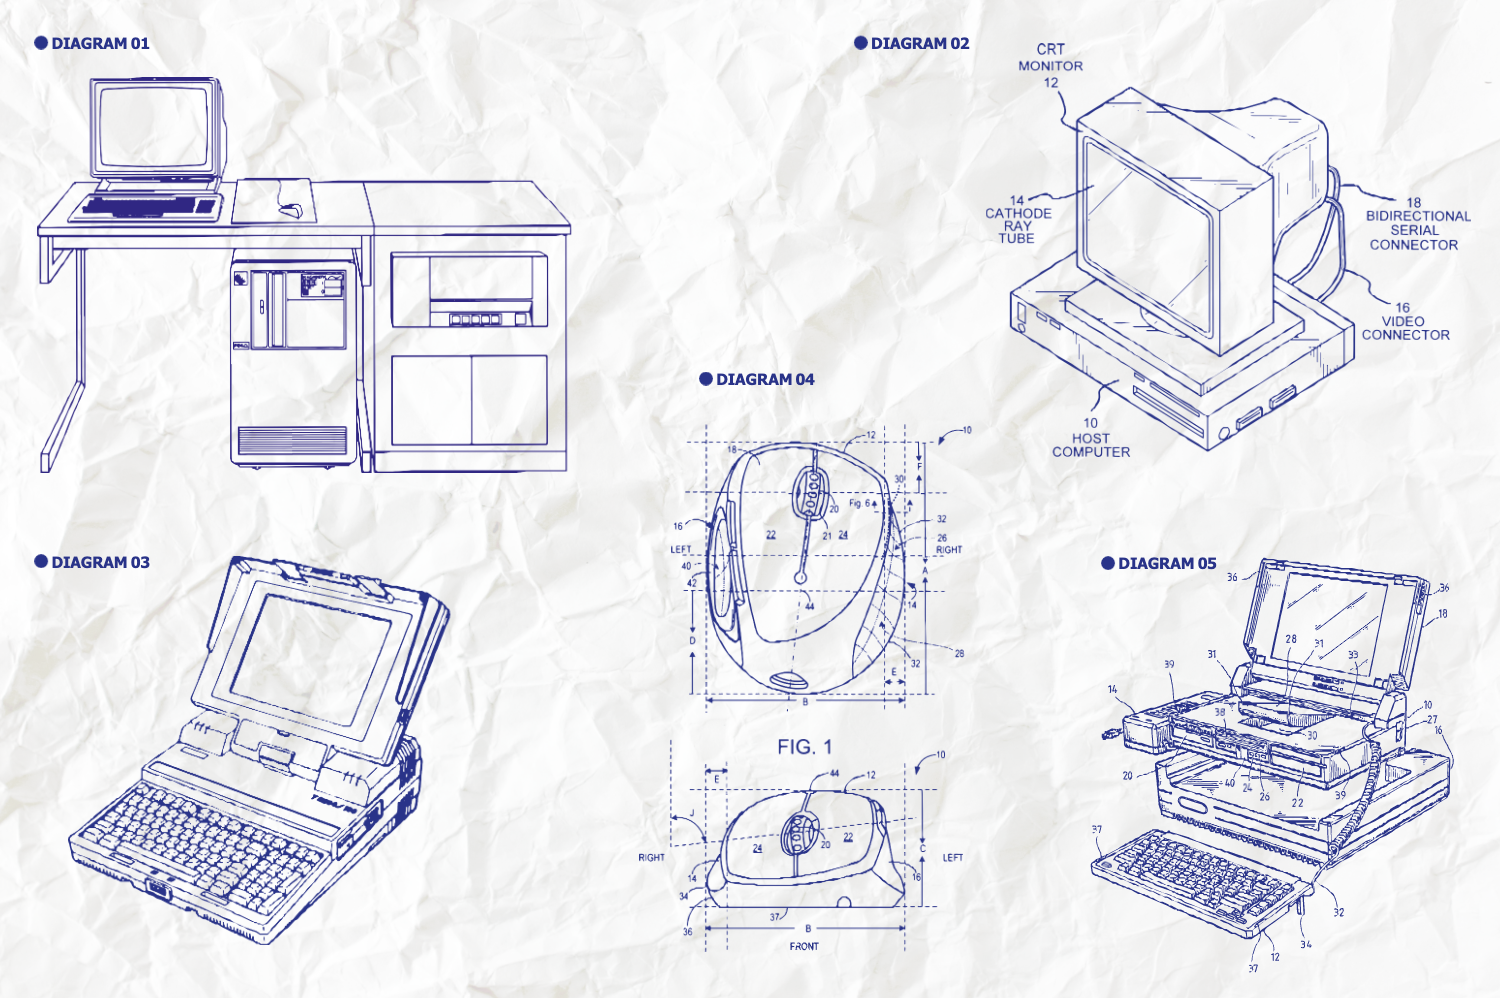 624 复古办公室电话传真机打字机投影仪主题矢量插画 Retro Diagrams – The Office Edition